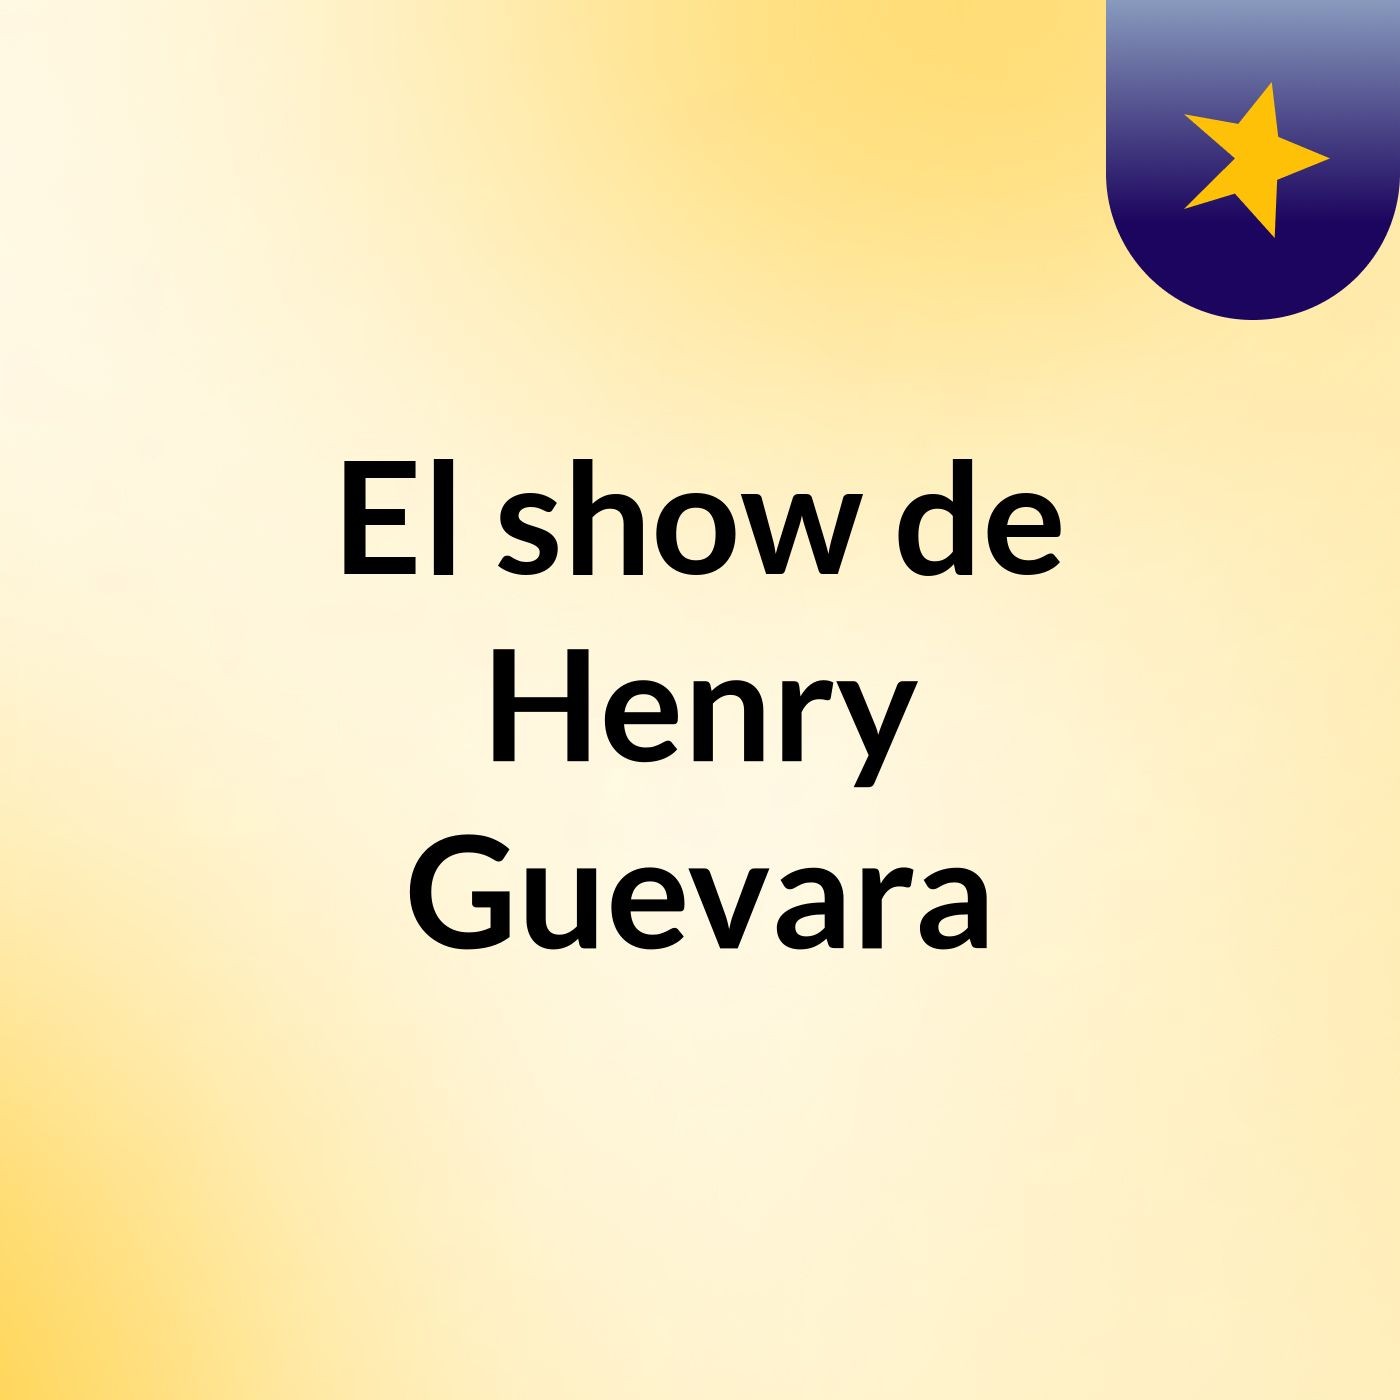 El show de Henry Guevara